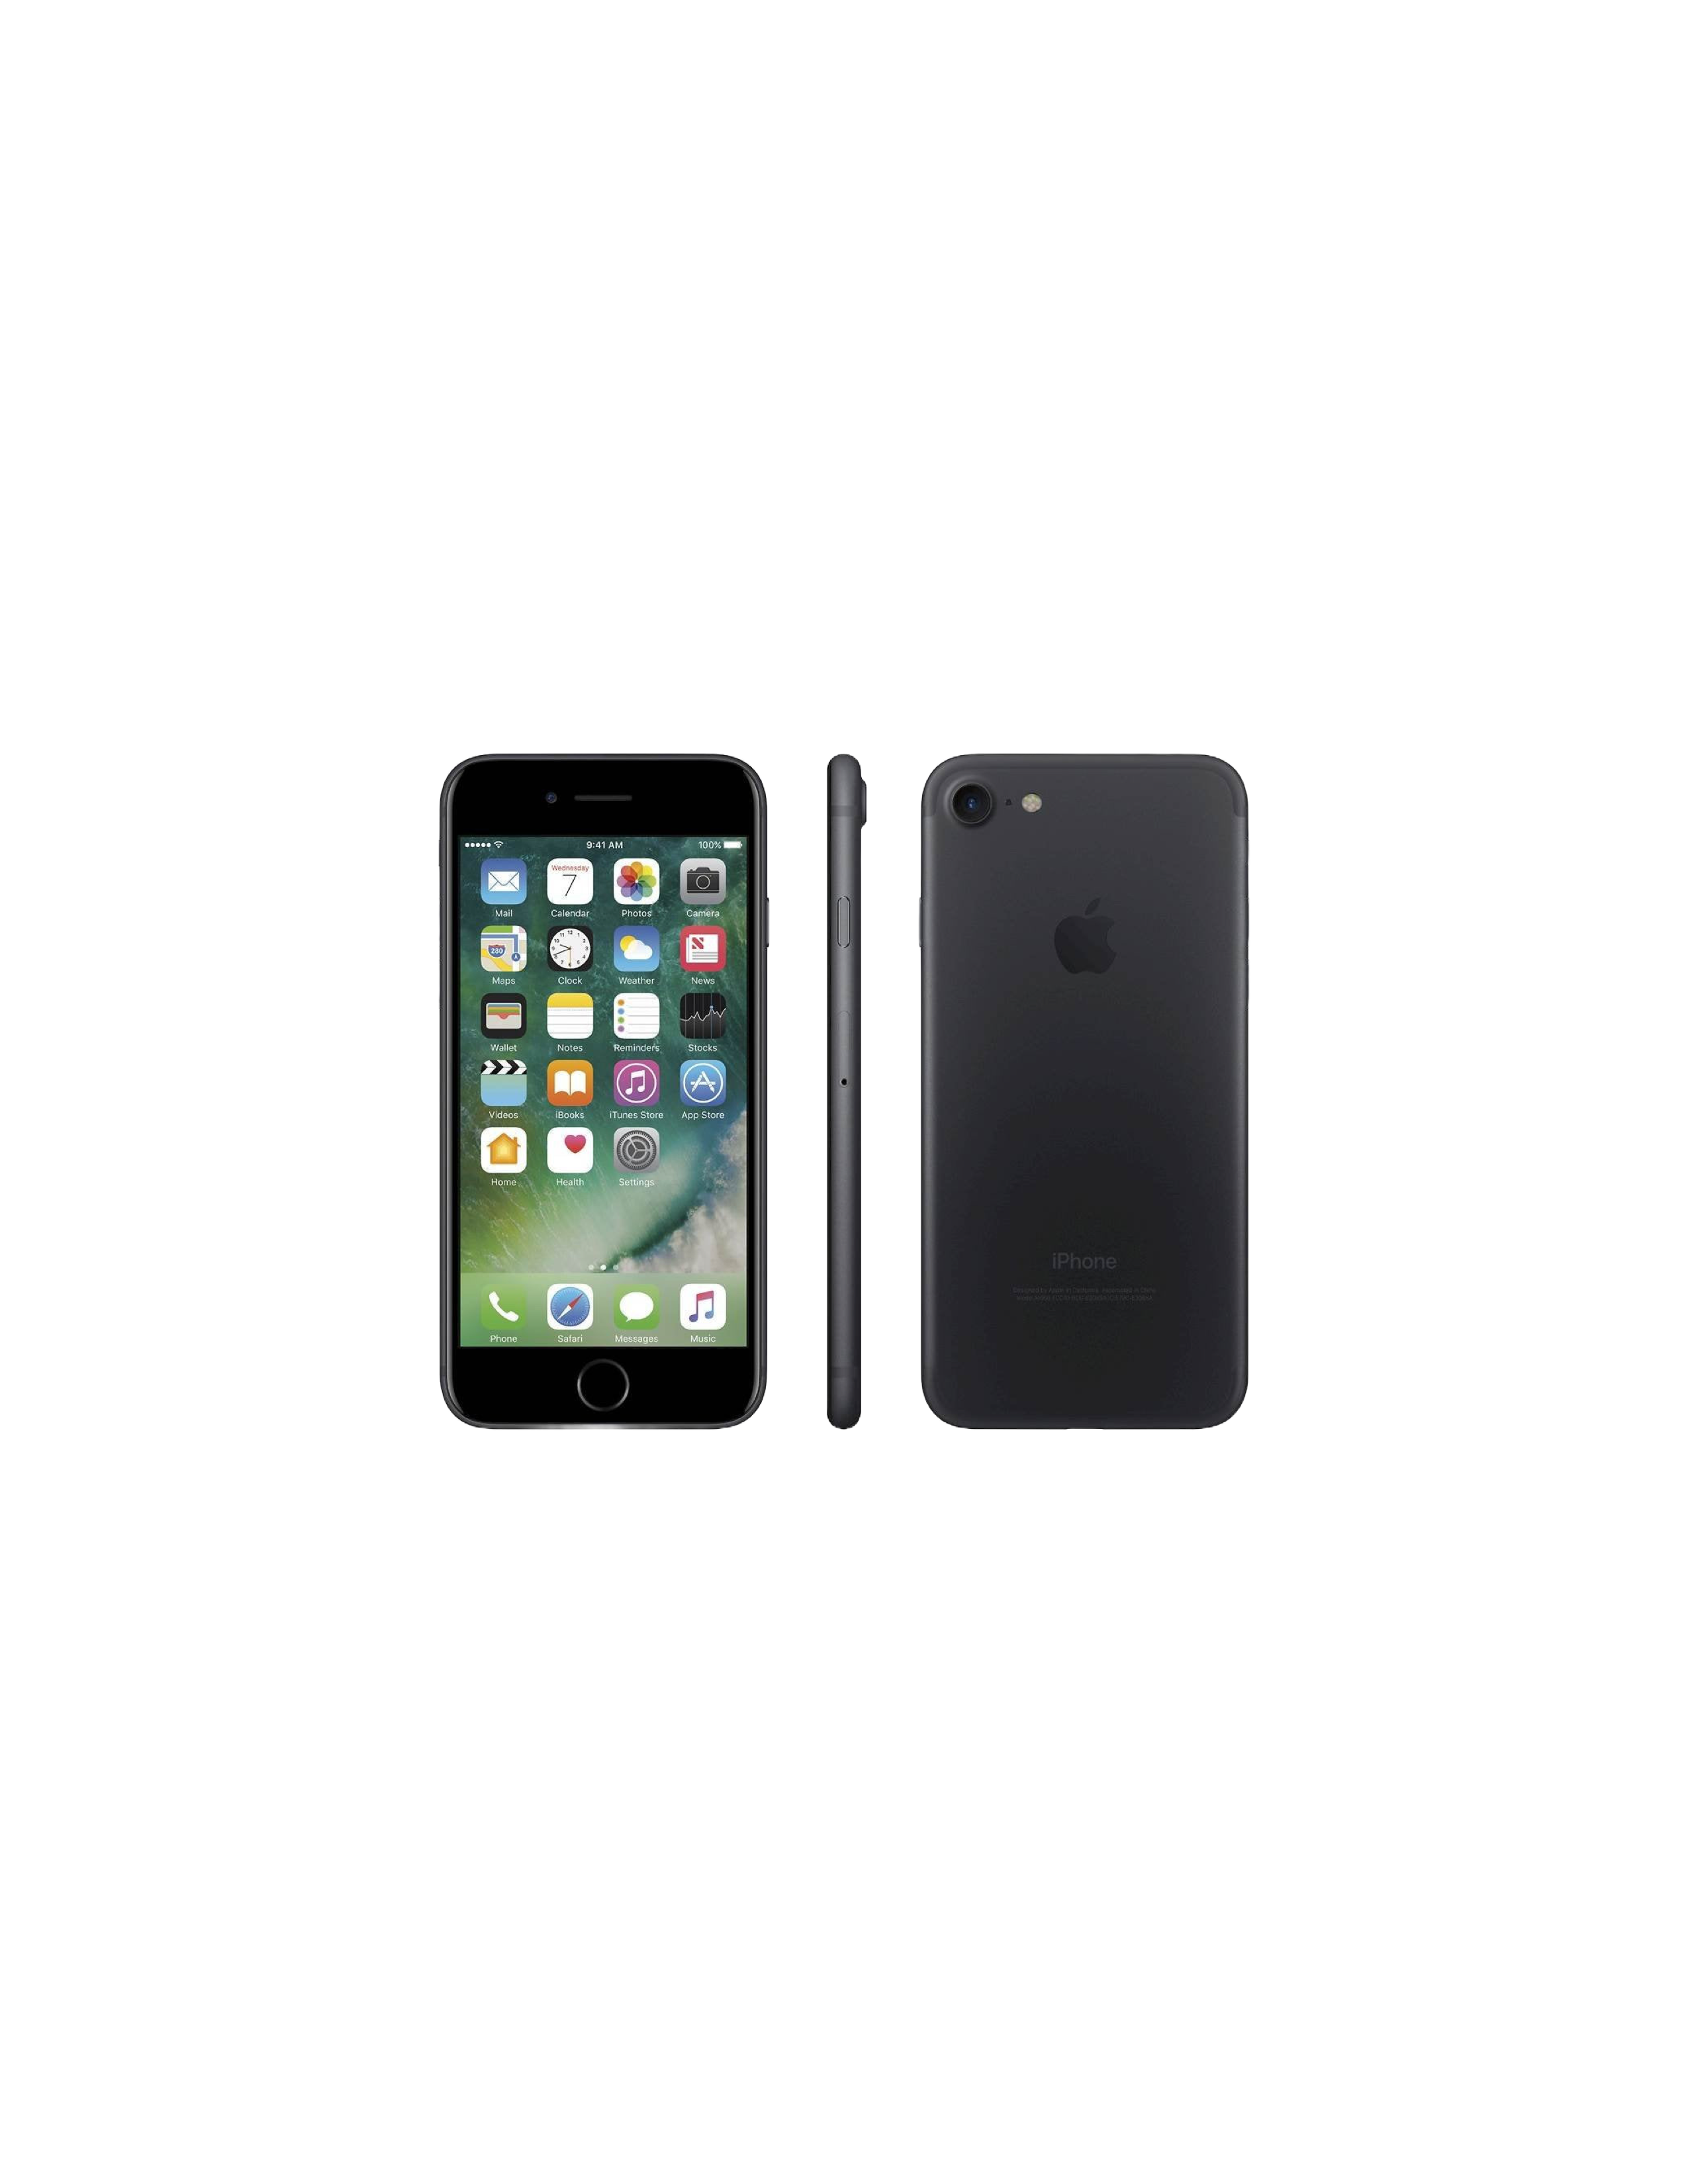 iPhone 7 32GB Unlocked Certified Used Black